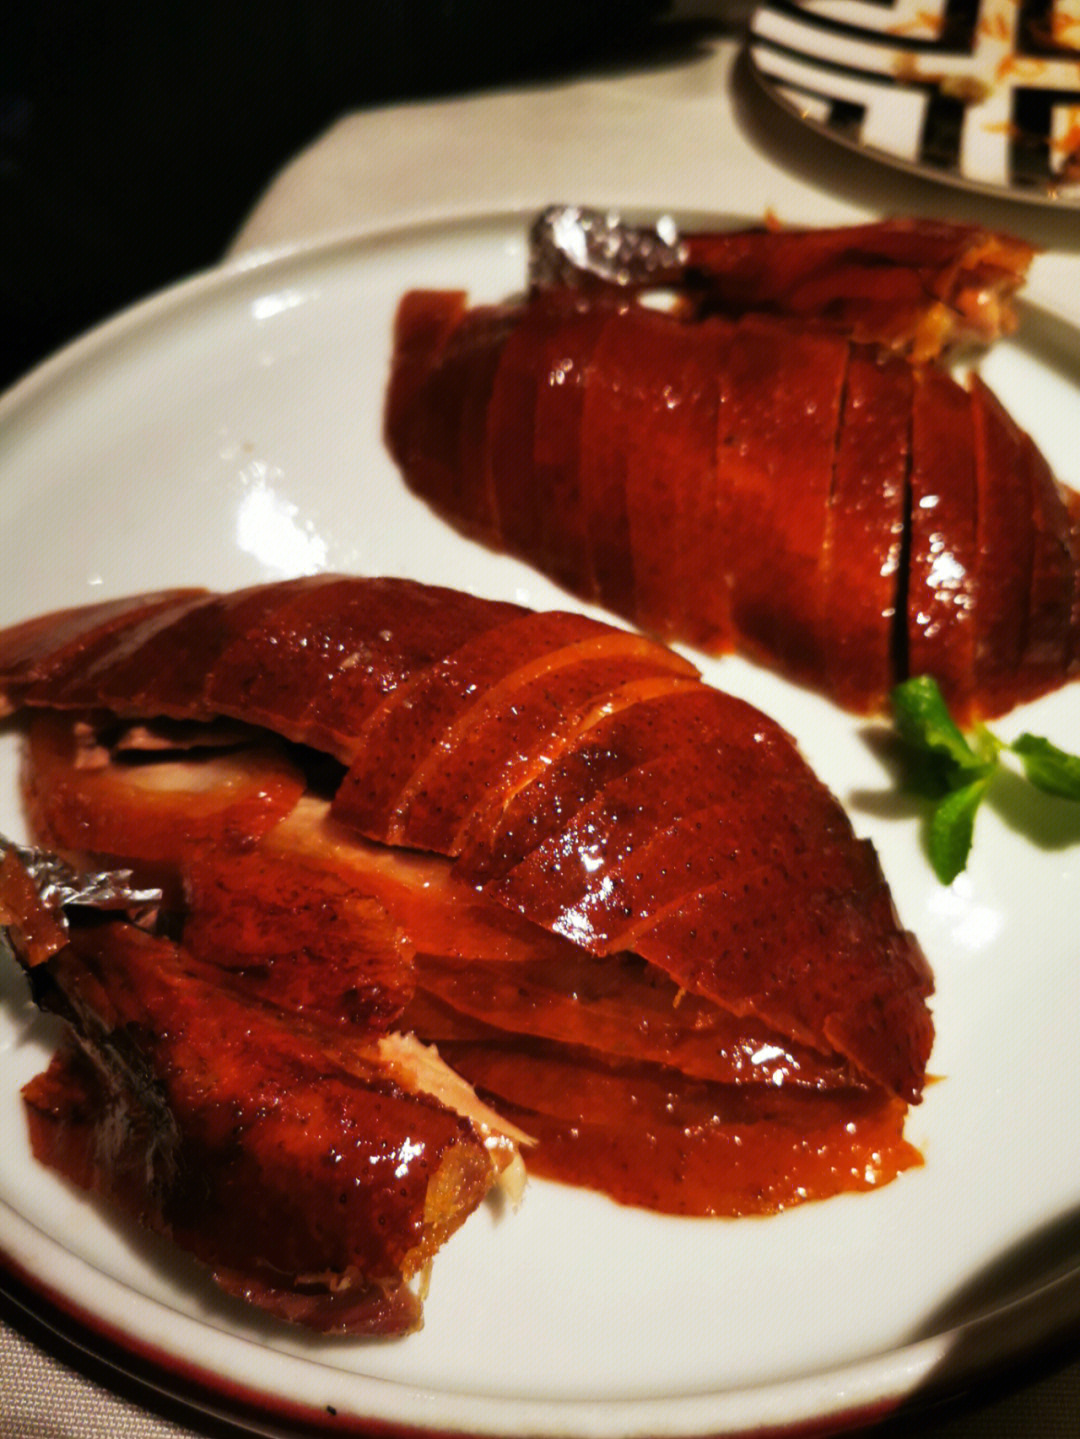 发现全聚德只排到成都地区北京菜烤鸭榜第三,排第一的是大鸭梨